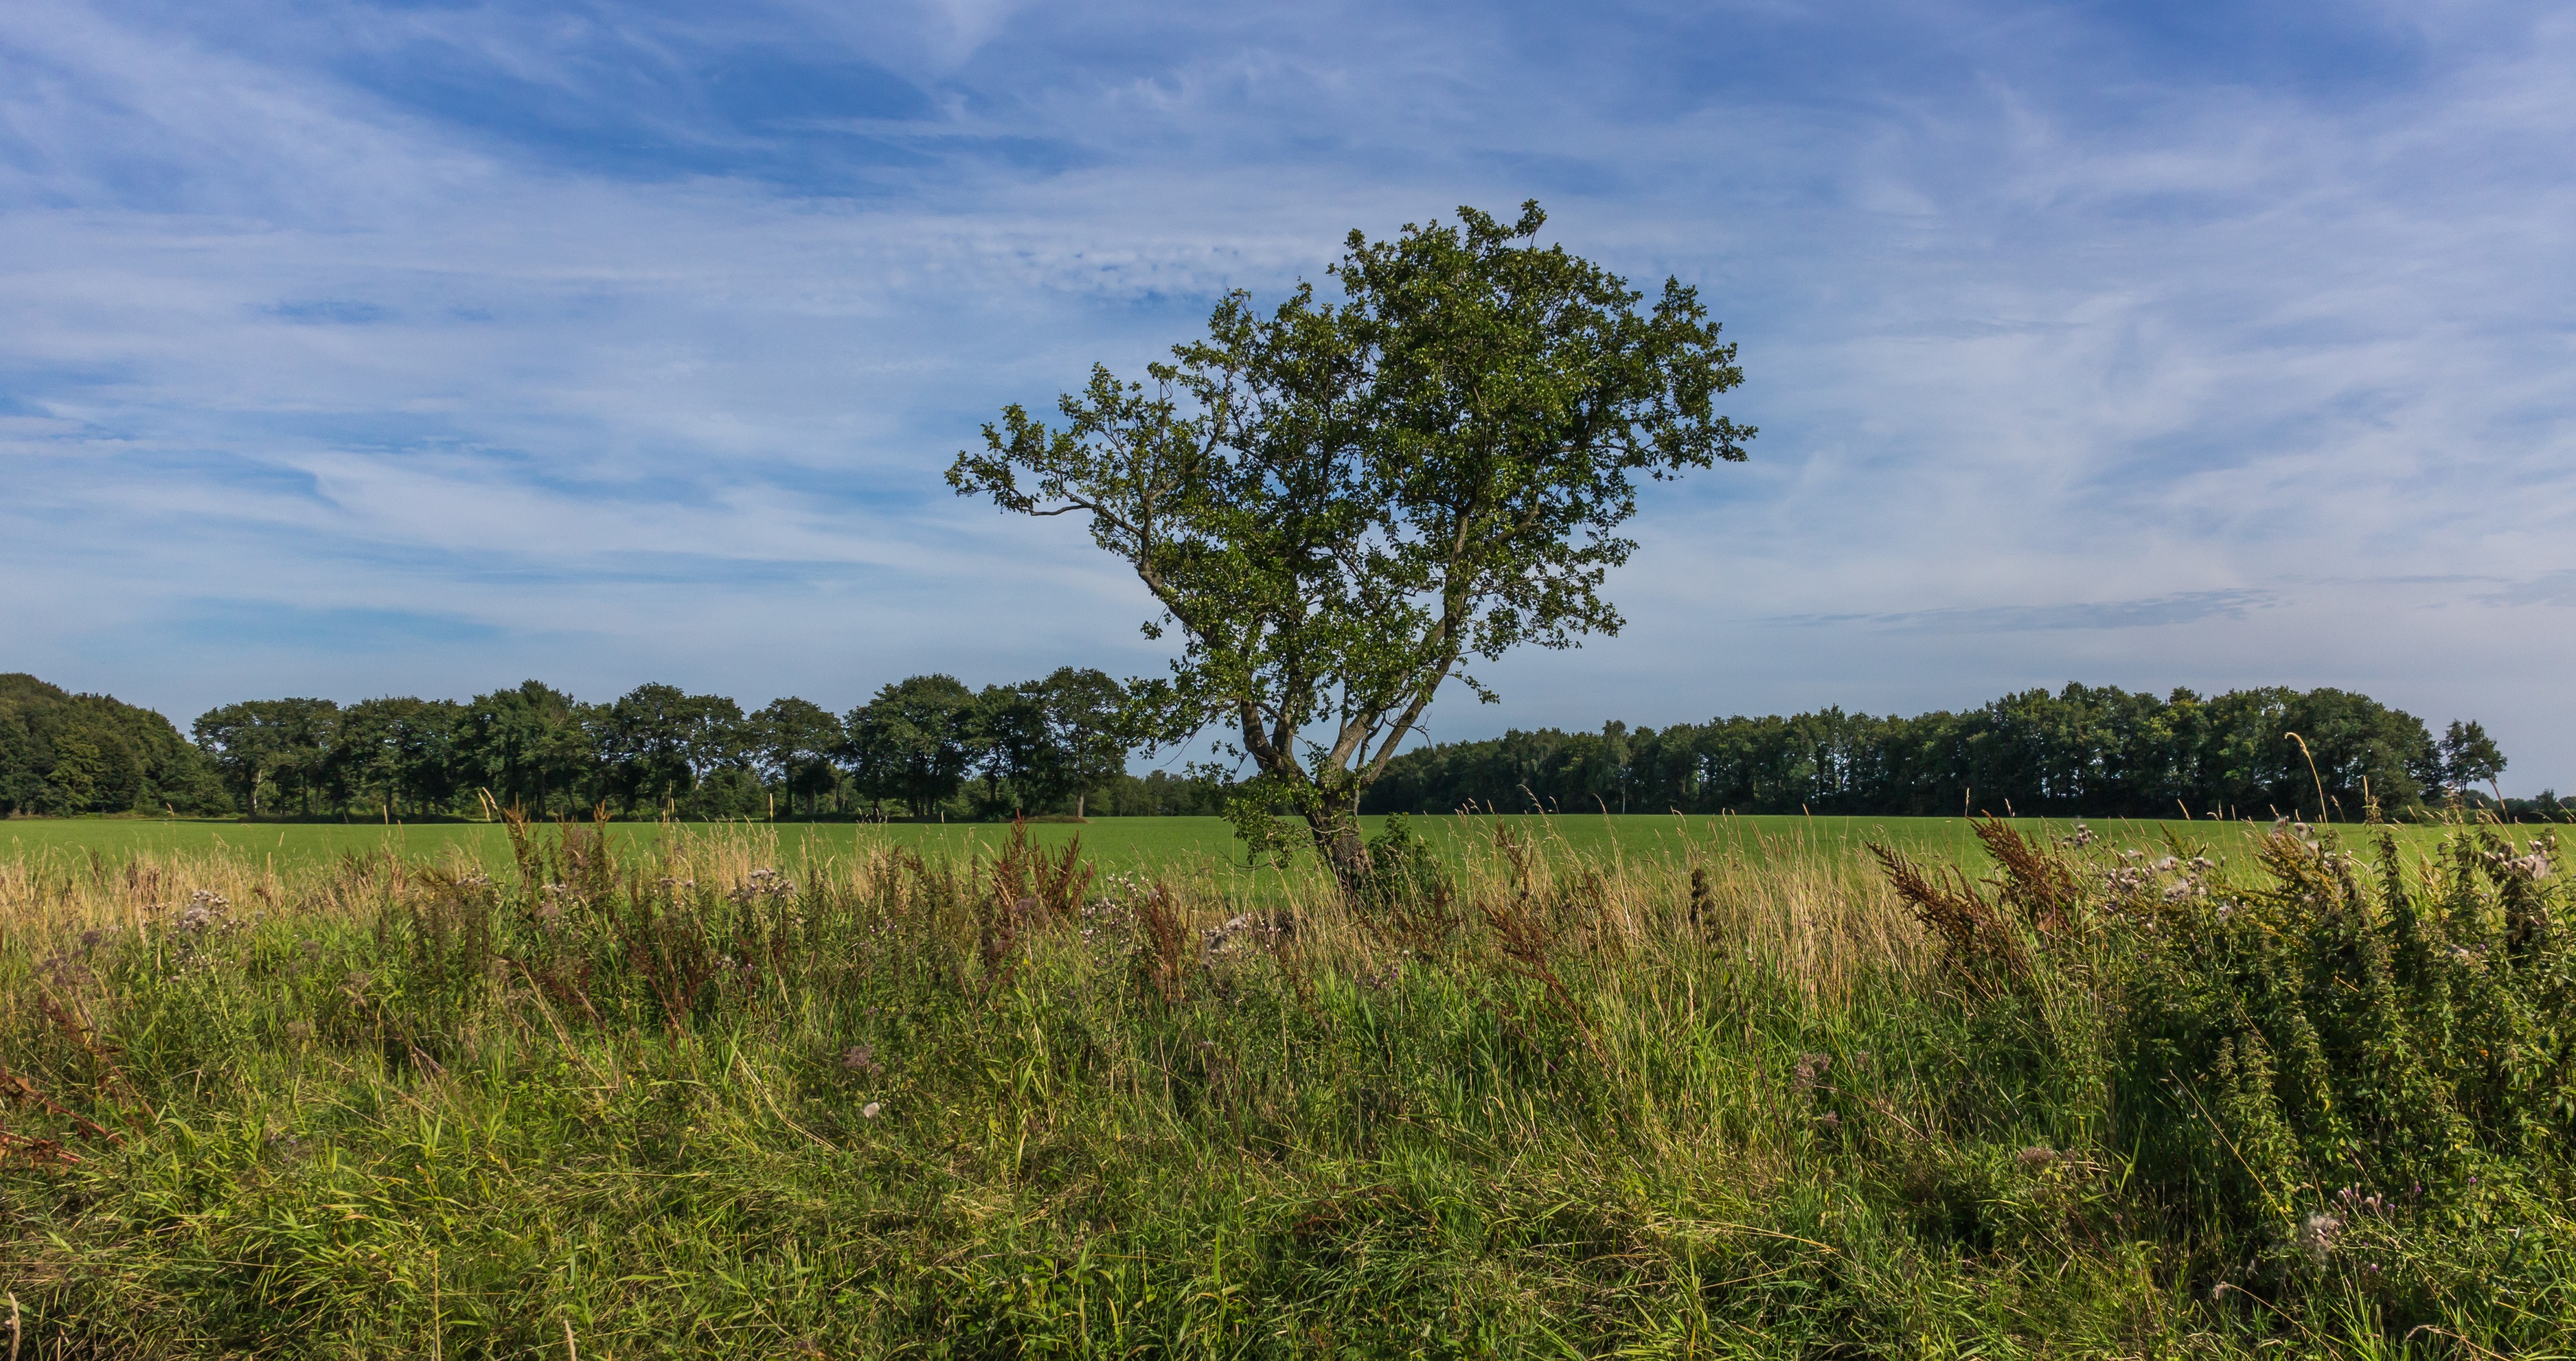 Eenzame boom in de lendevallei. Locatie, Stuttebosch in de lendevallei. Provincie Friesland 01